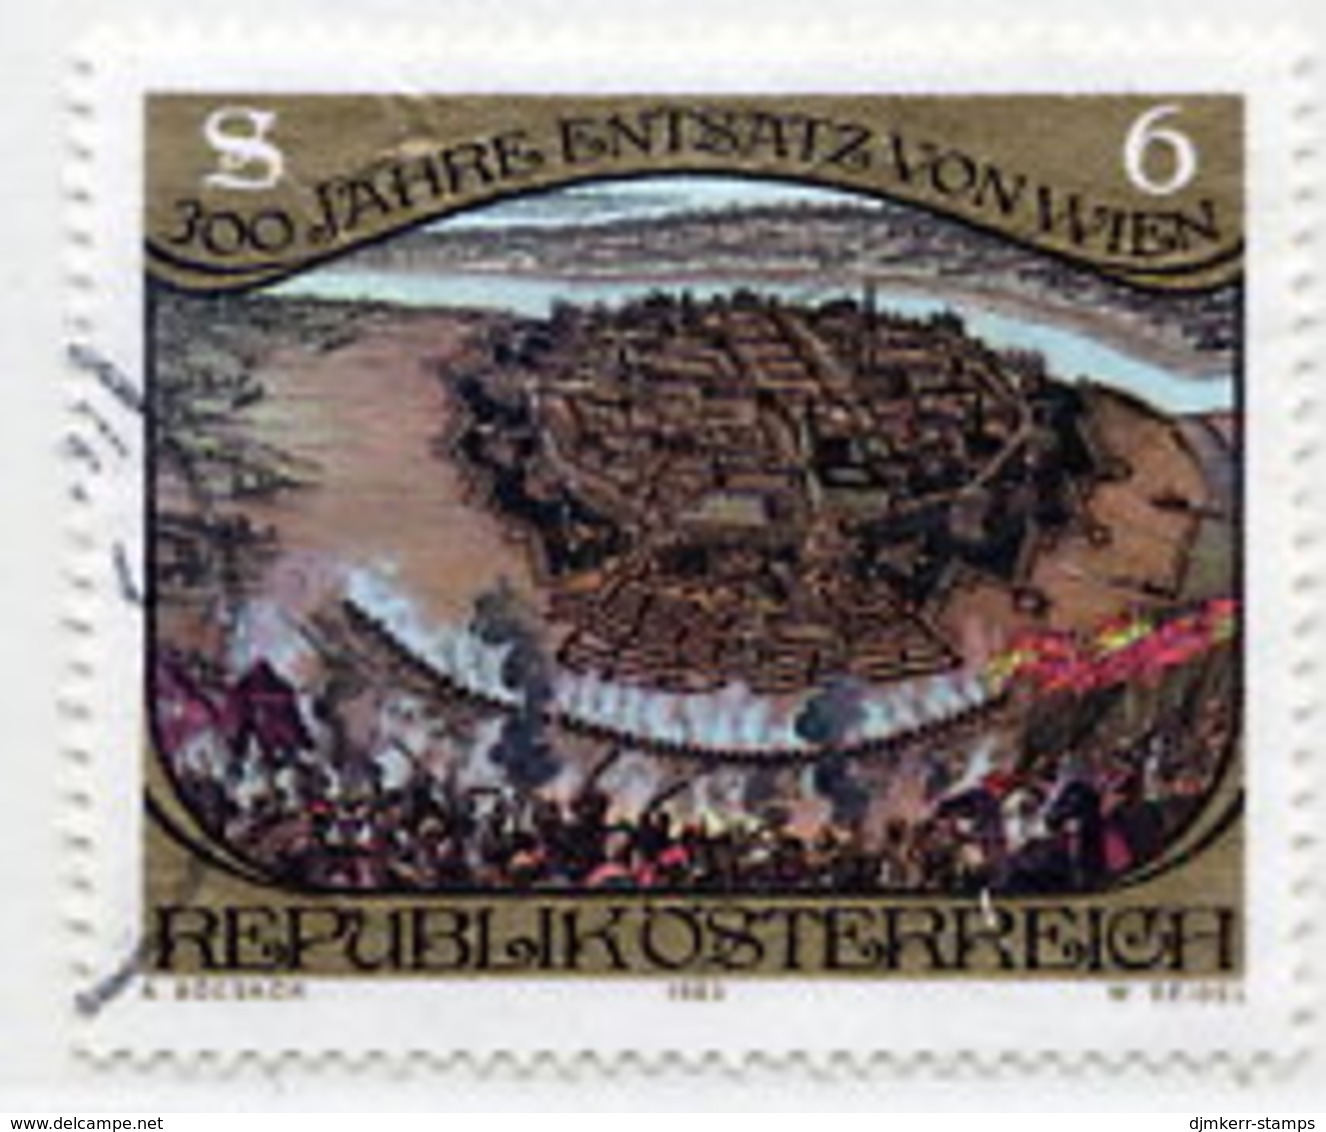 AUSTRIA 1983 Siege Of Vienna Single Ex Block, Used.  Michel 1750 - Gebraucht